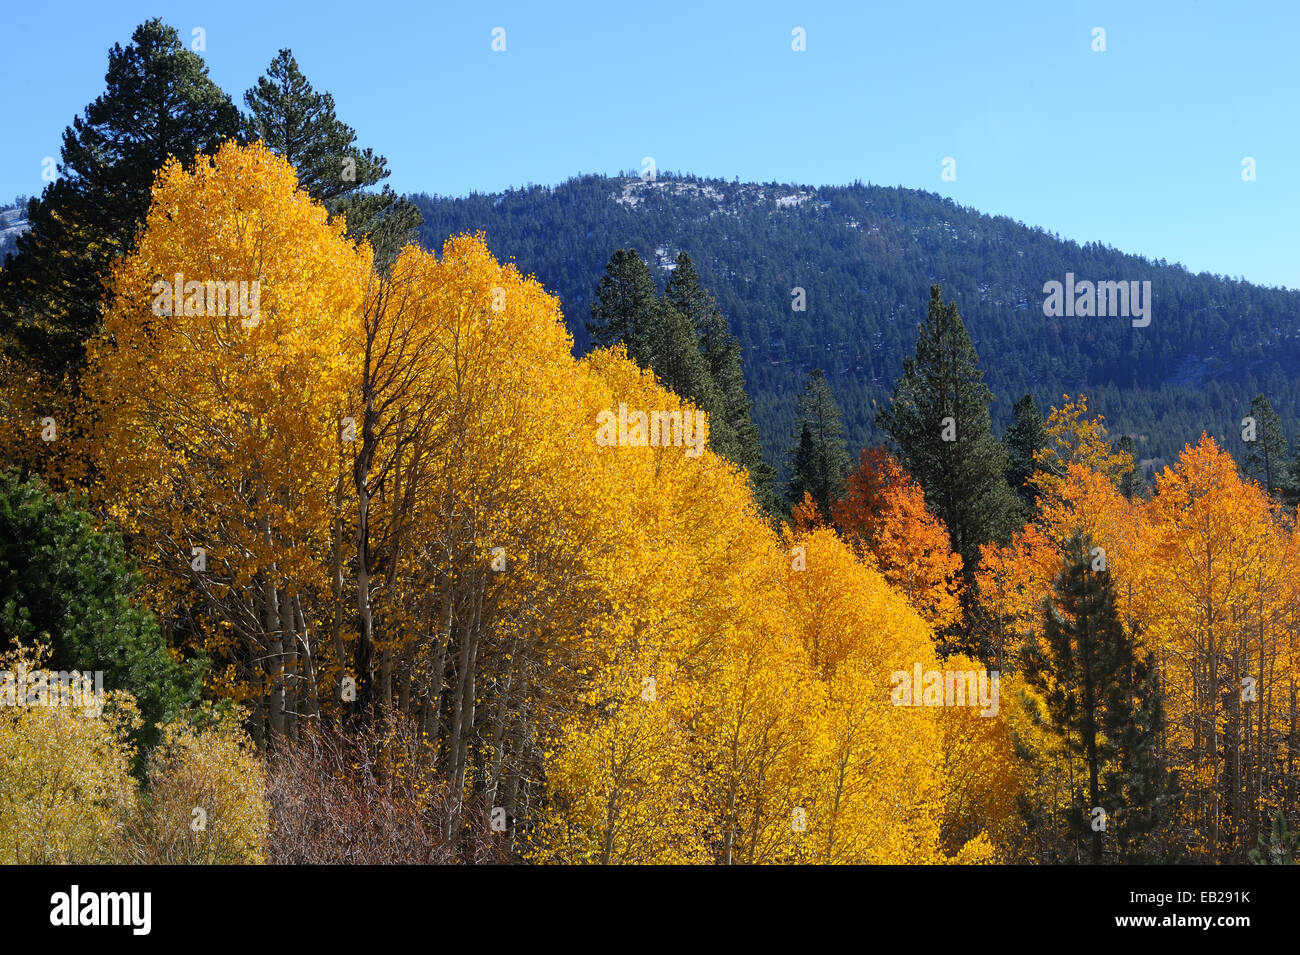 Un affichage d'aspen grove jaunes brillantes mettent en évidence l'arrivée de l'automne dans les montagnes de la Sierra Nevada. Banque D'Images